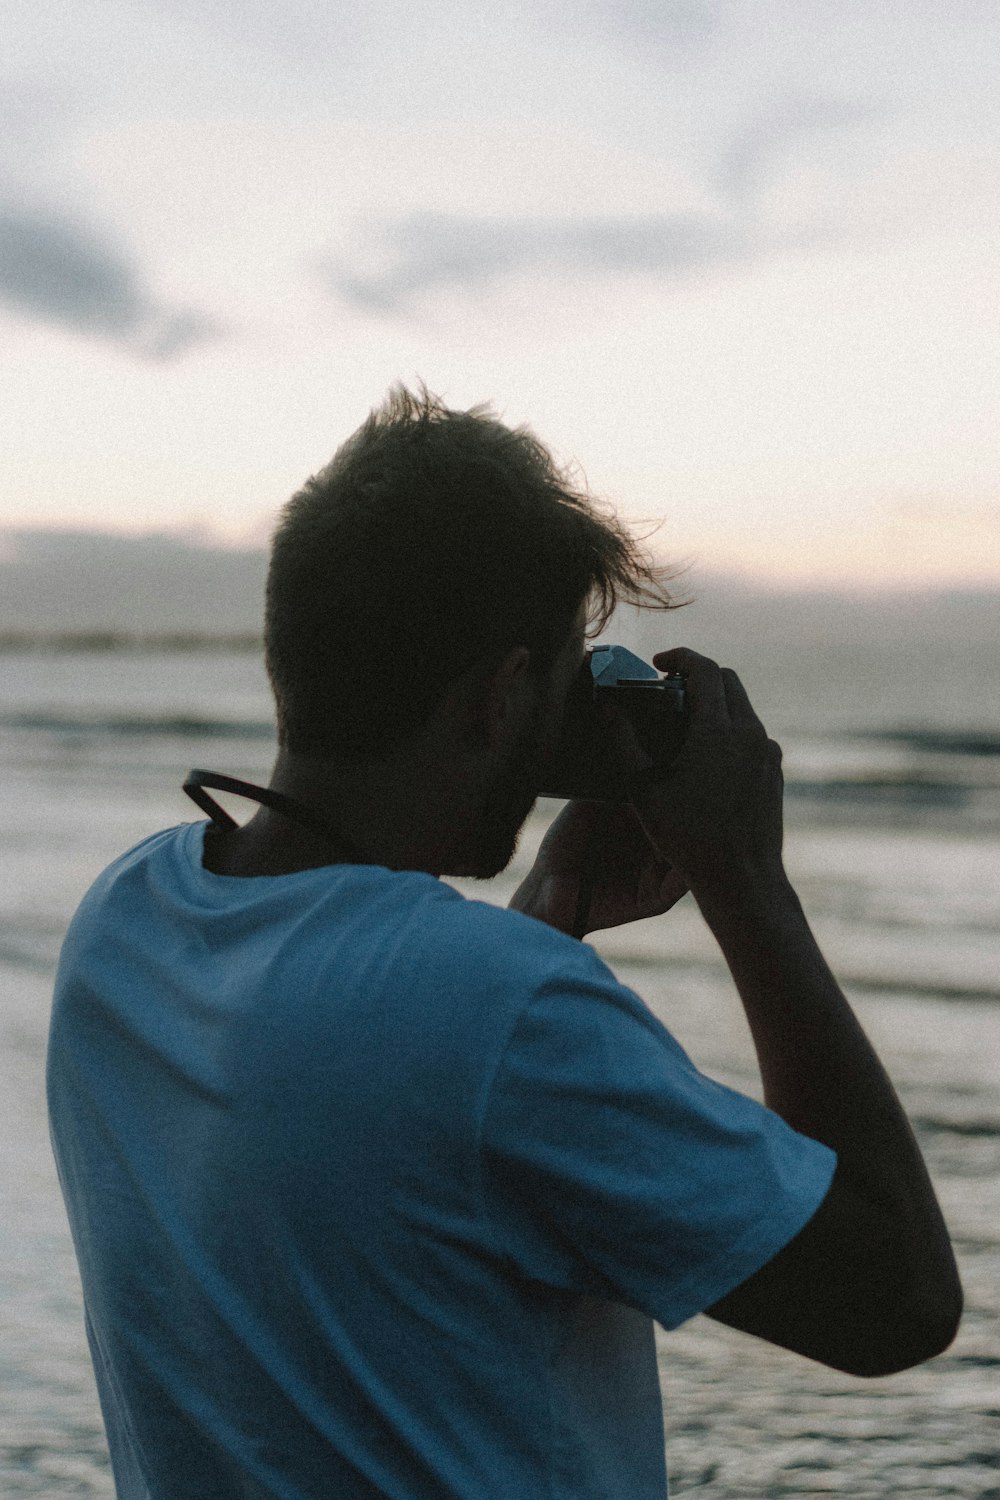 man in blue shirt taking photo of sea during daytime